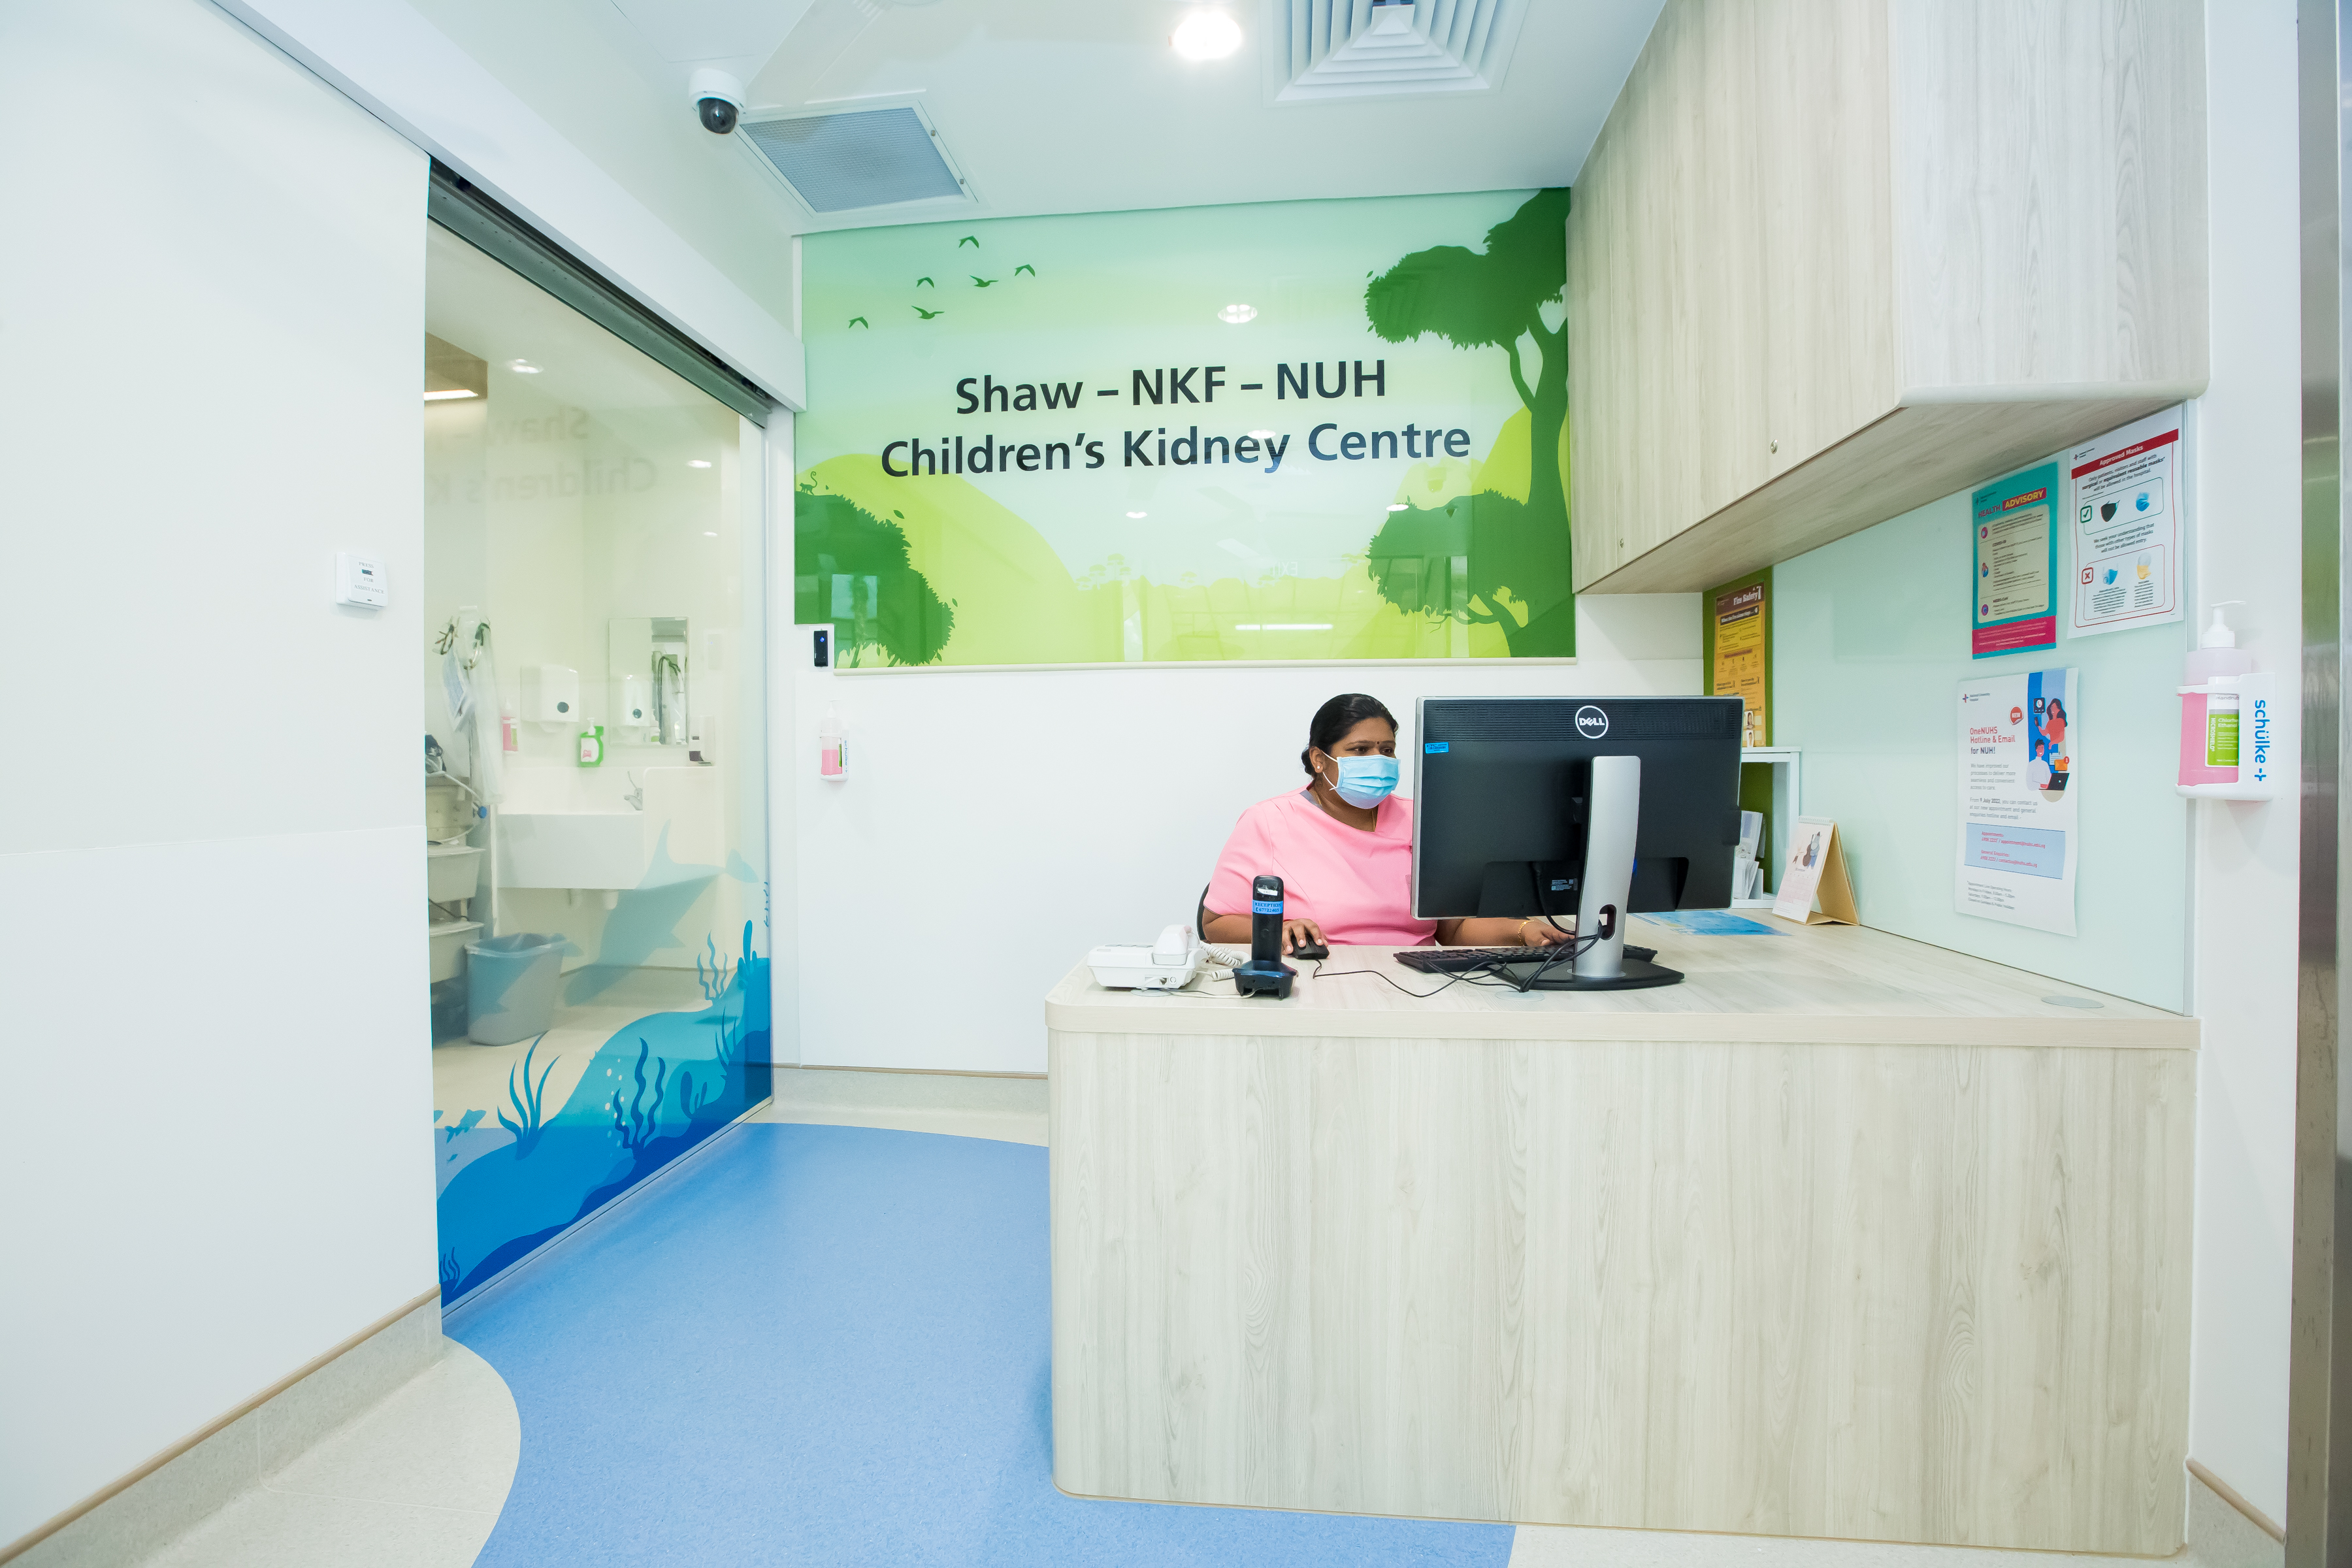 Shaw-NKF-NUH Children's Kidney Centre